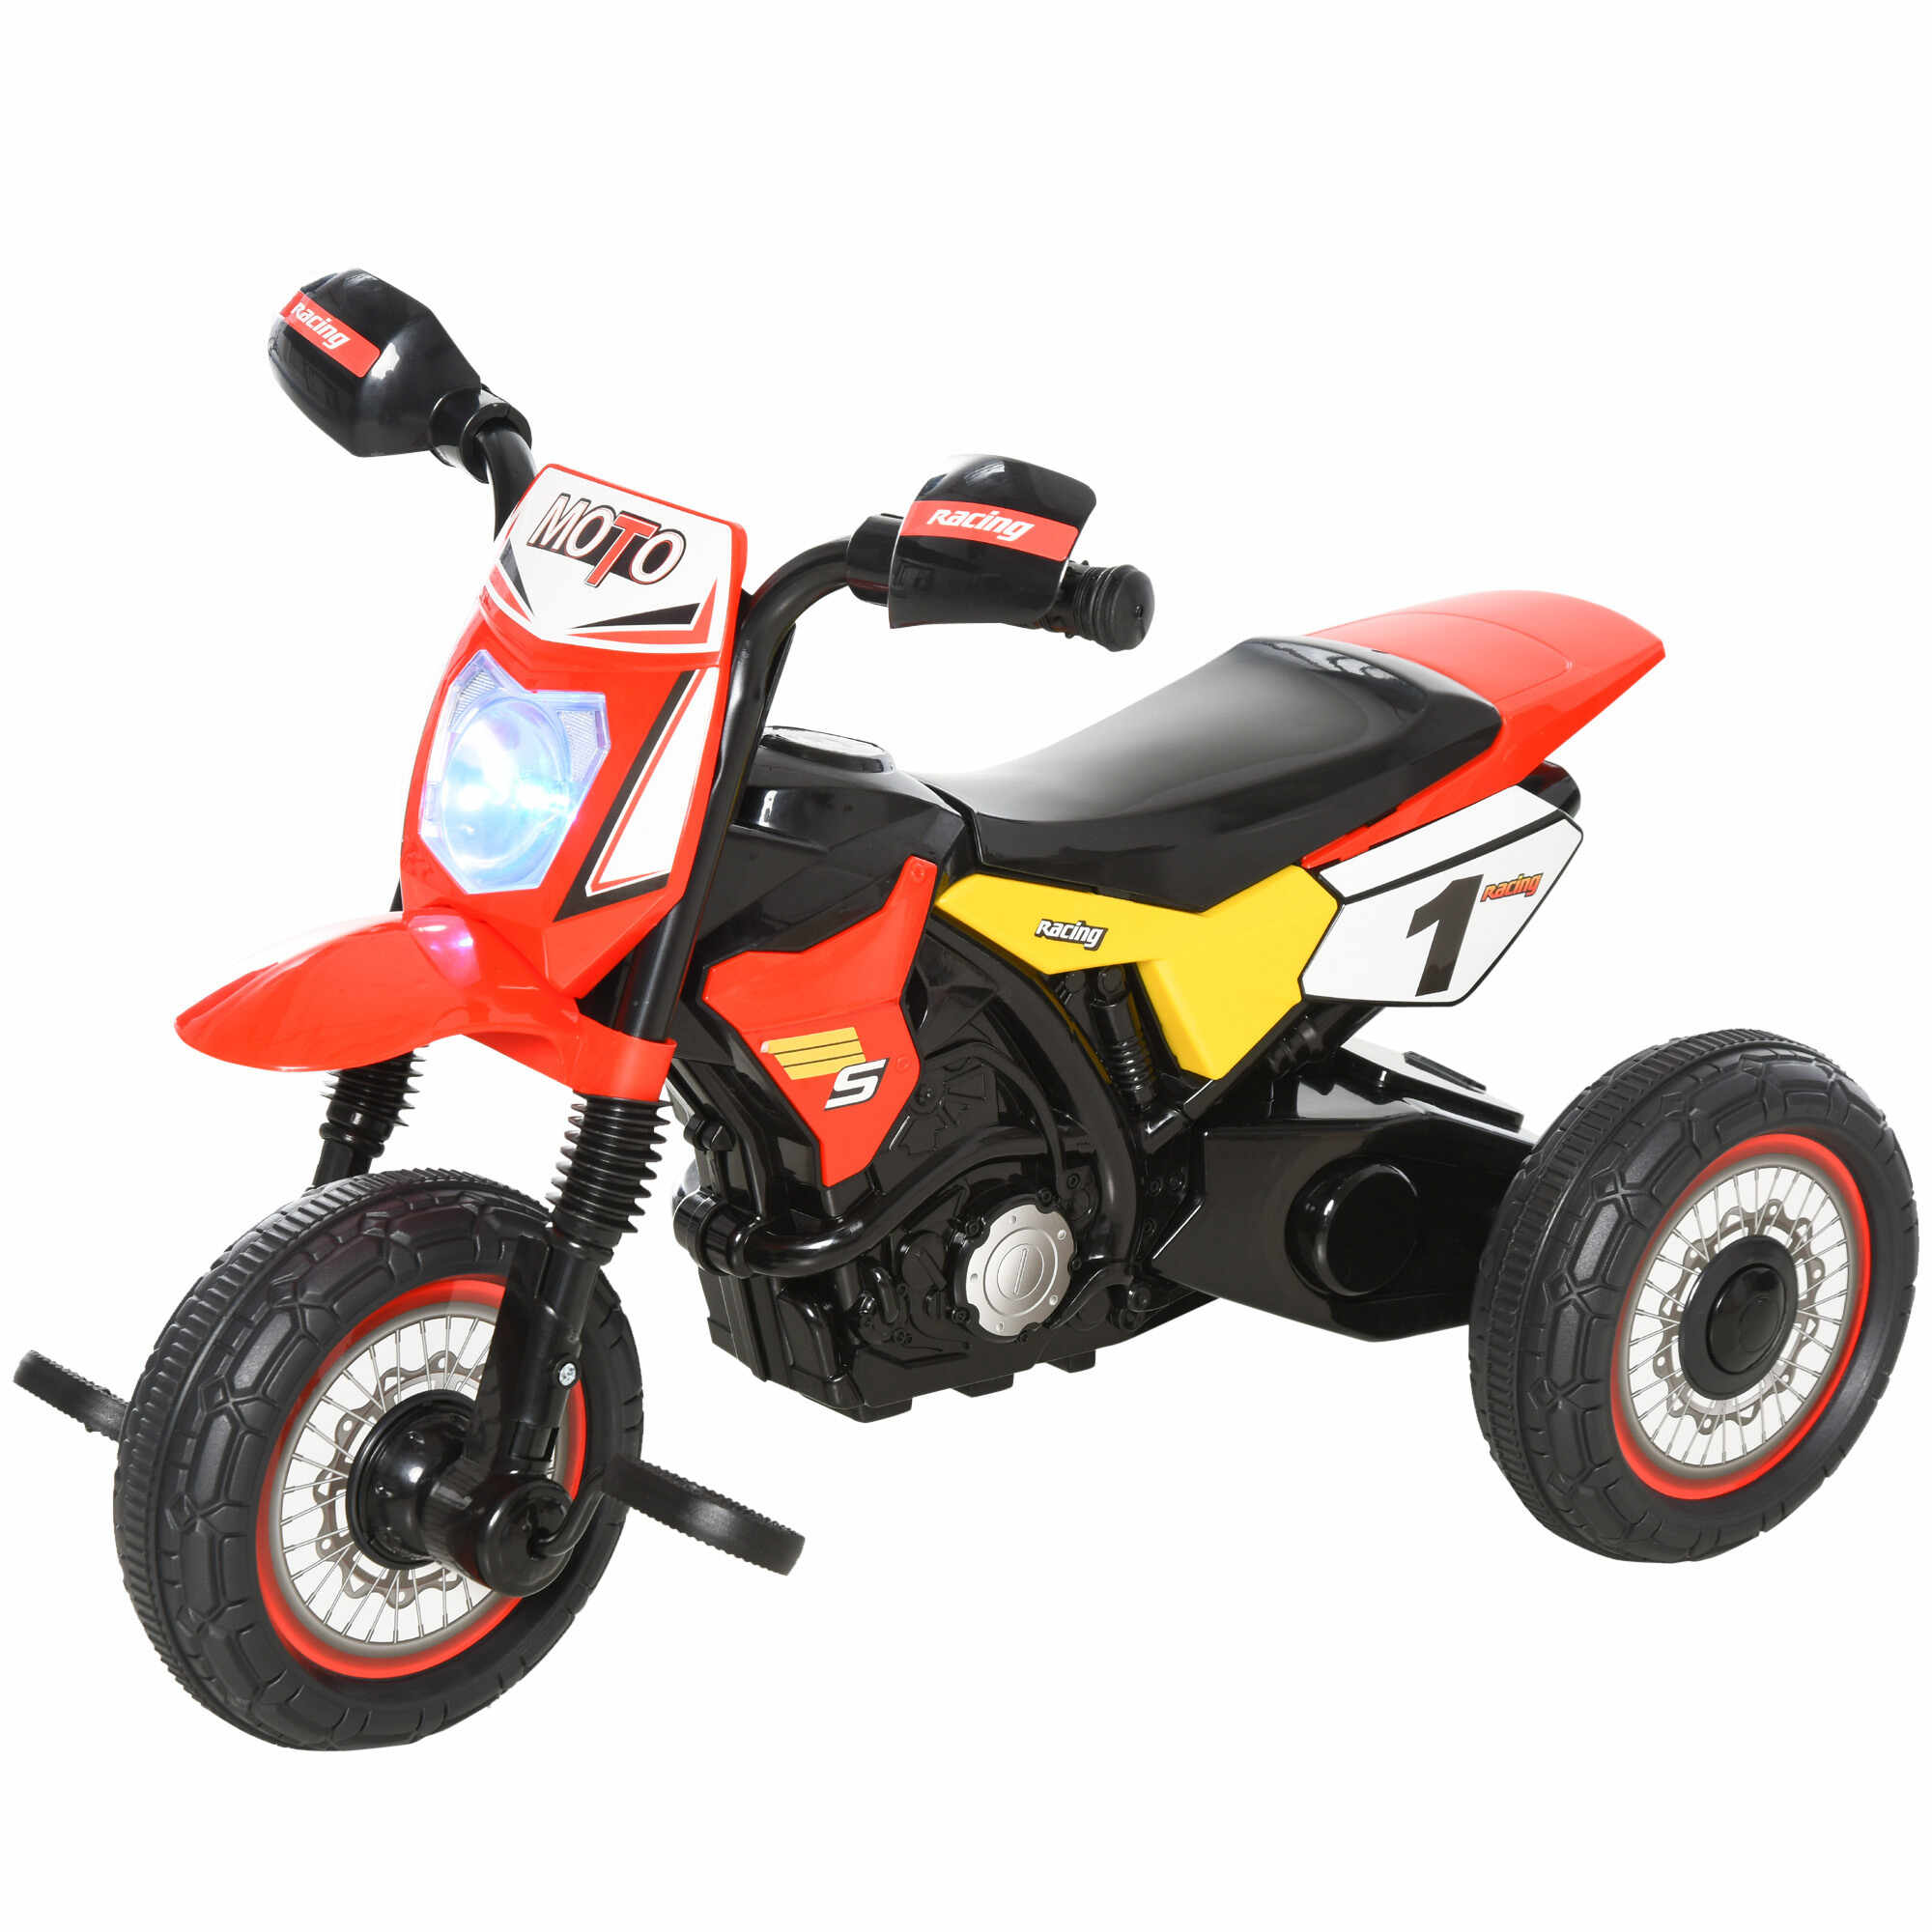 HOMCOM Tricicleta pentru Copii Stil Motocicleta cu Pedale cu Lumini si Sunete, 3 Roti Late, Varsta 18-36 Luni, 71x40x51cm, Rosu